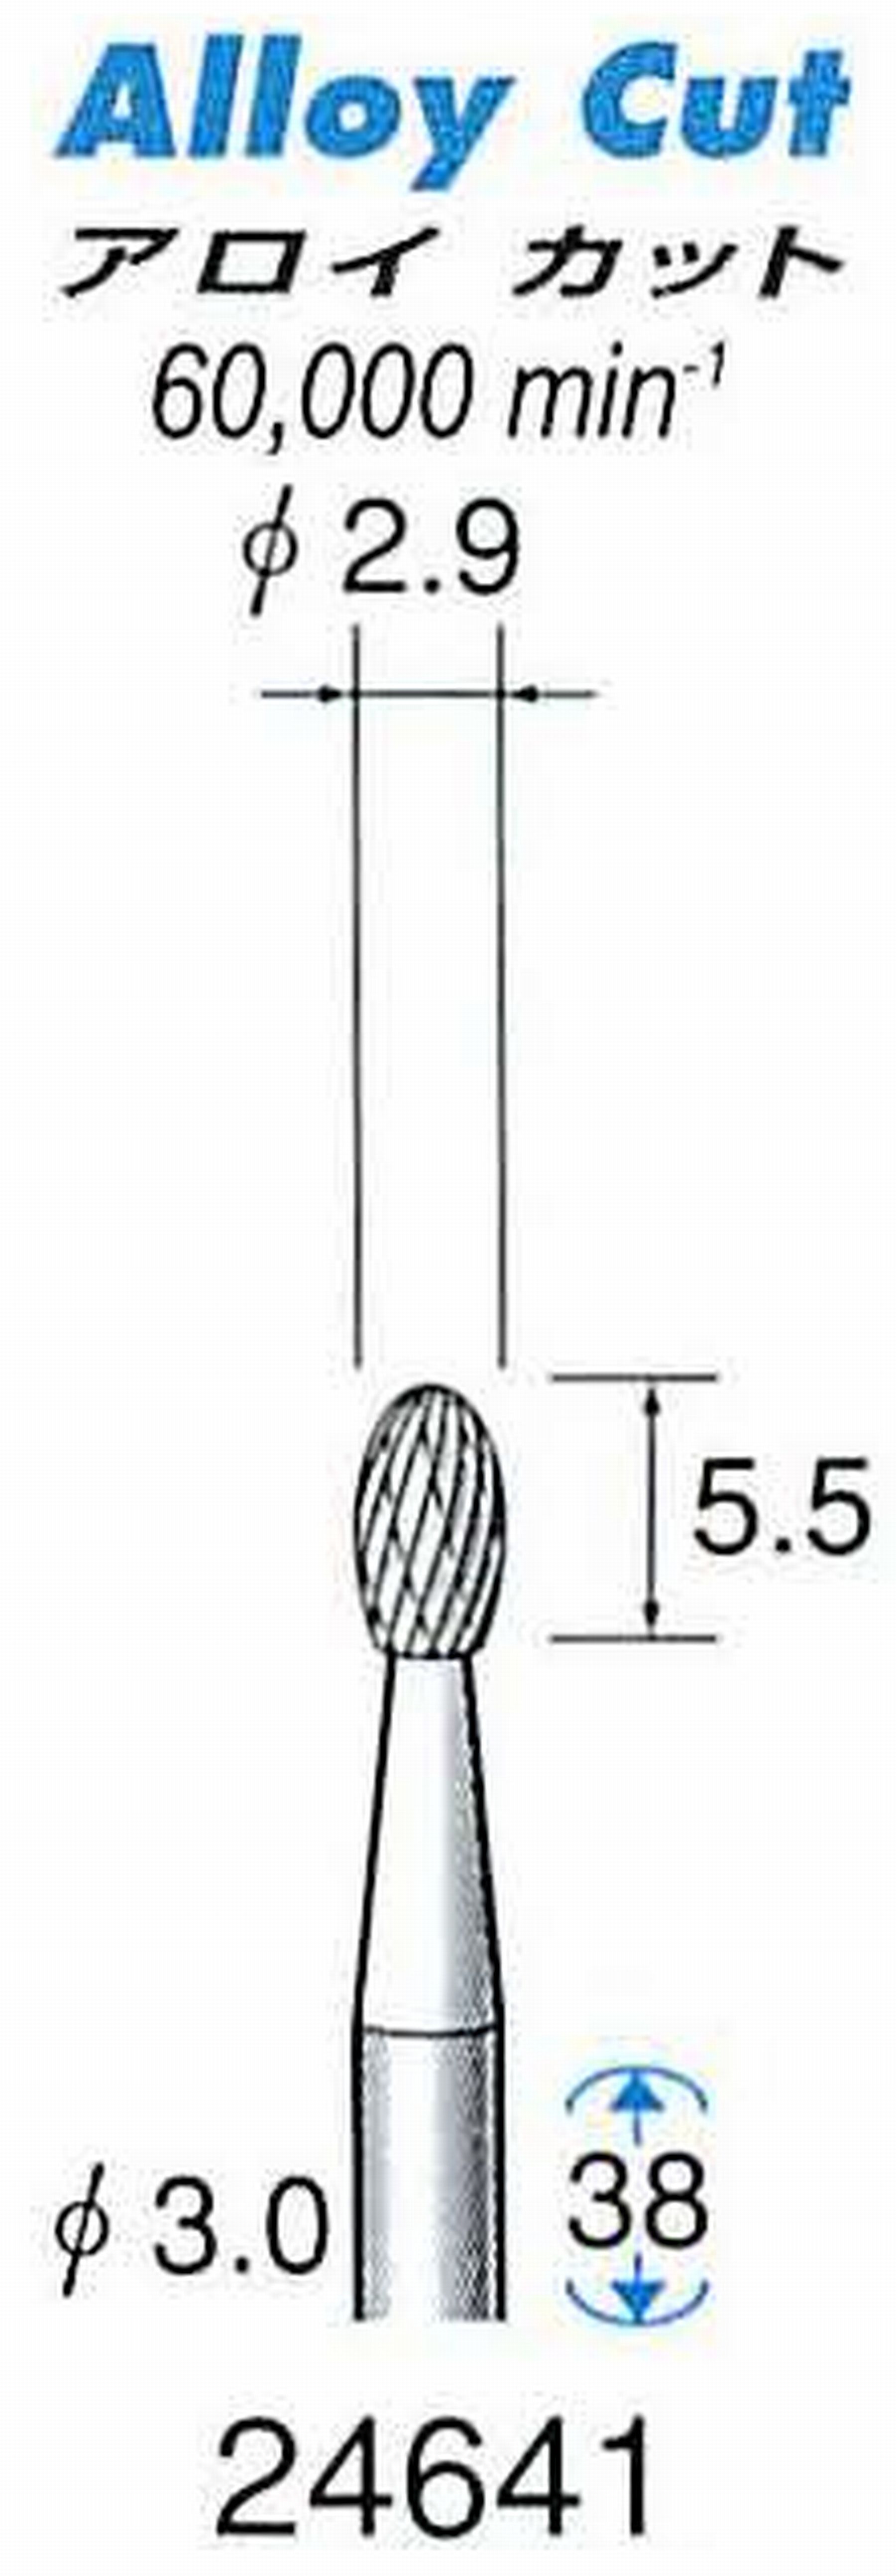 ナカニシ/NAKANISHI 超硬アロイカッター 軸径(シャンク)φ3.0mm 24641